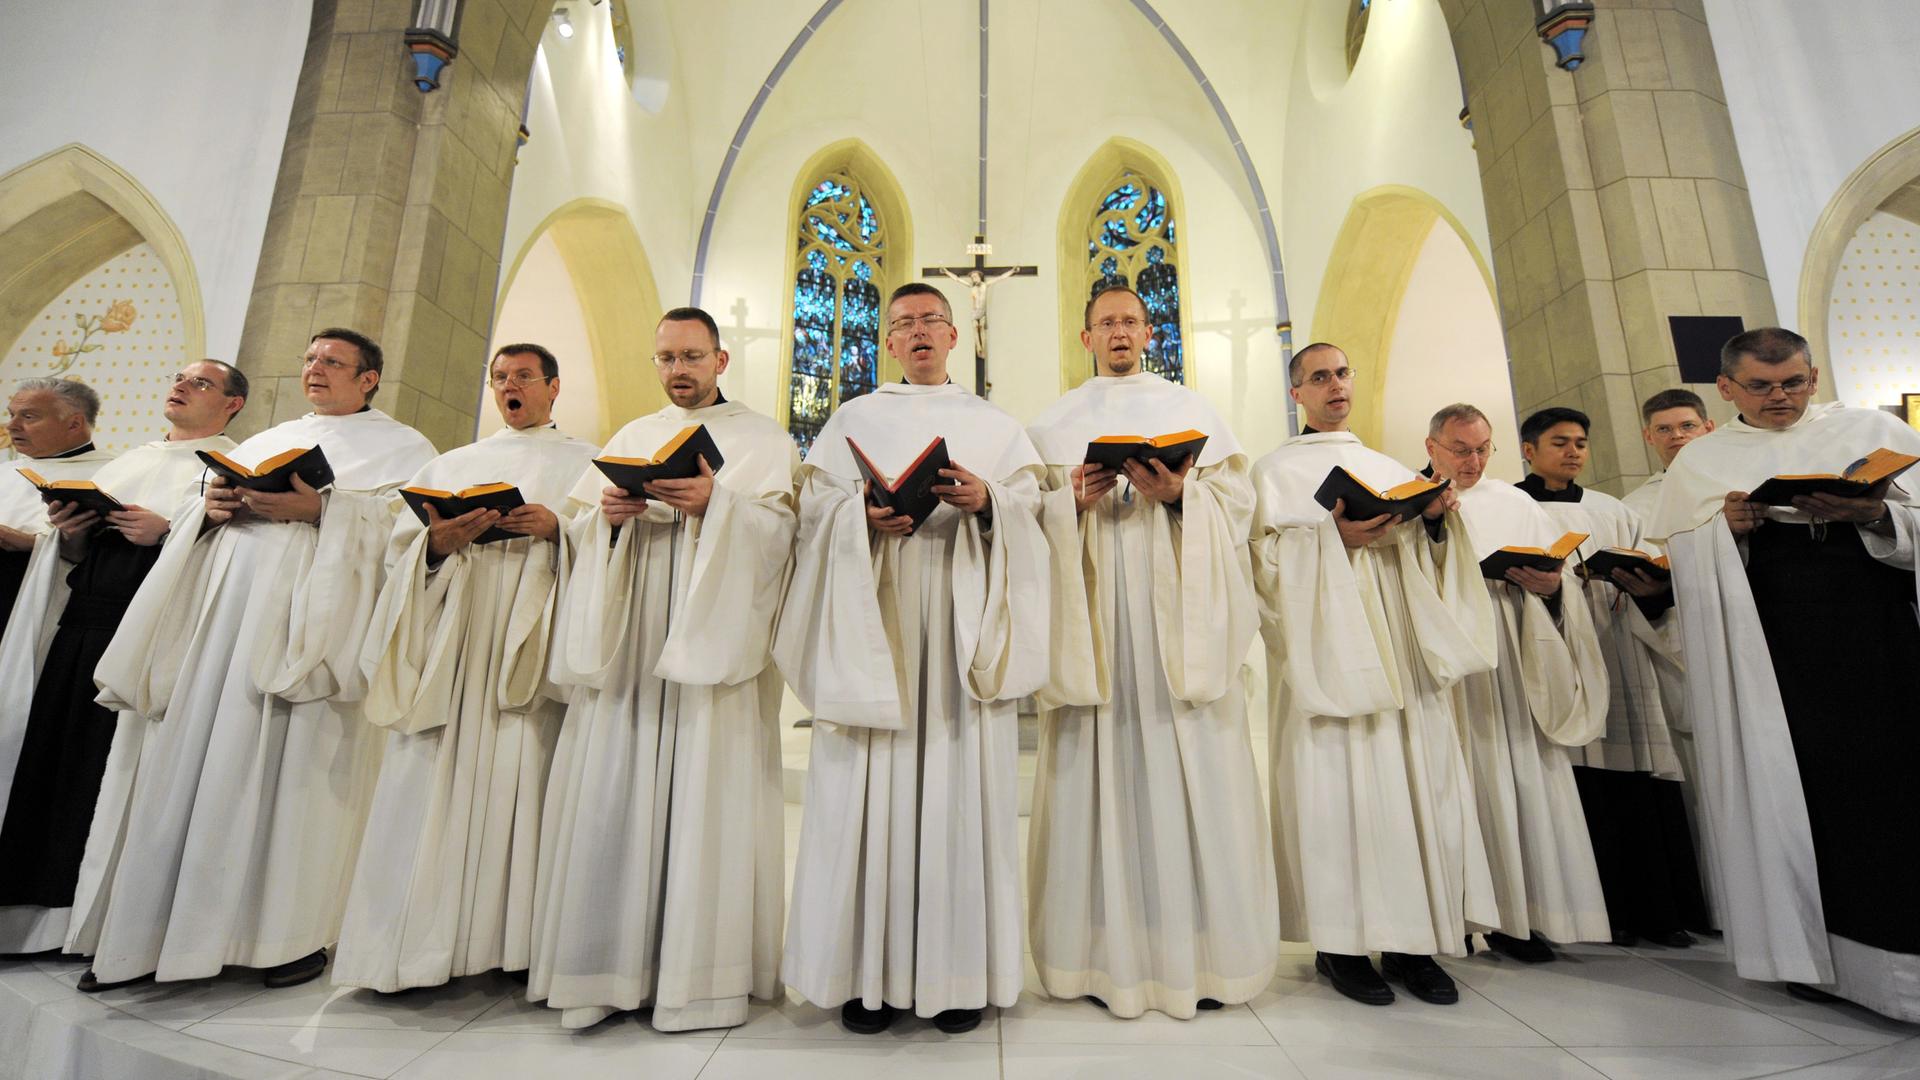 Zisterzienser-Mönche vom Kloster Heiligenkreuz im Wienerwald singen in einer Kapelle des Klosters in Bochum-Stiepel gregorianische Choräle.